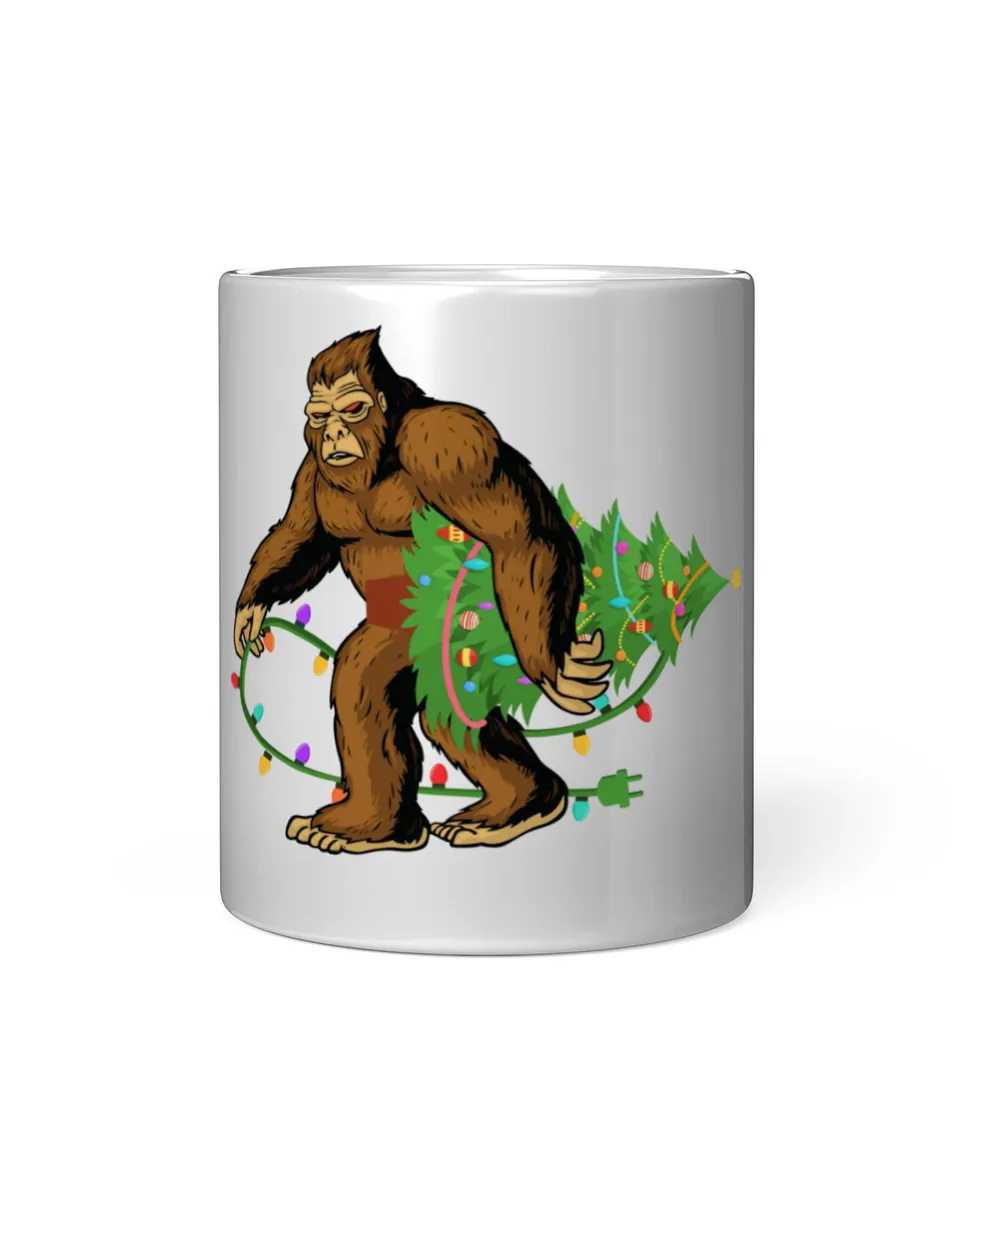 Big Foot With Christmas Tree Insulated Mug